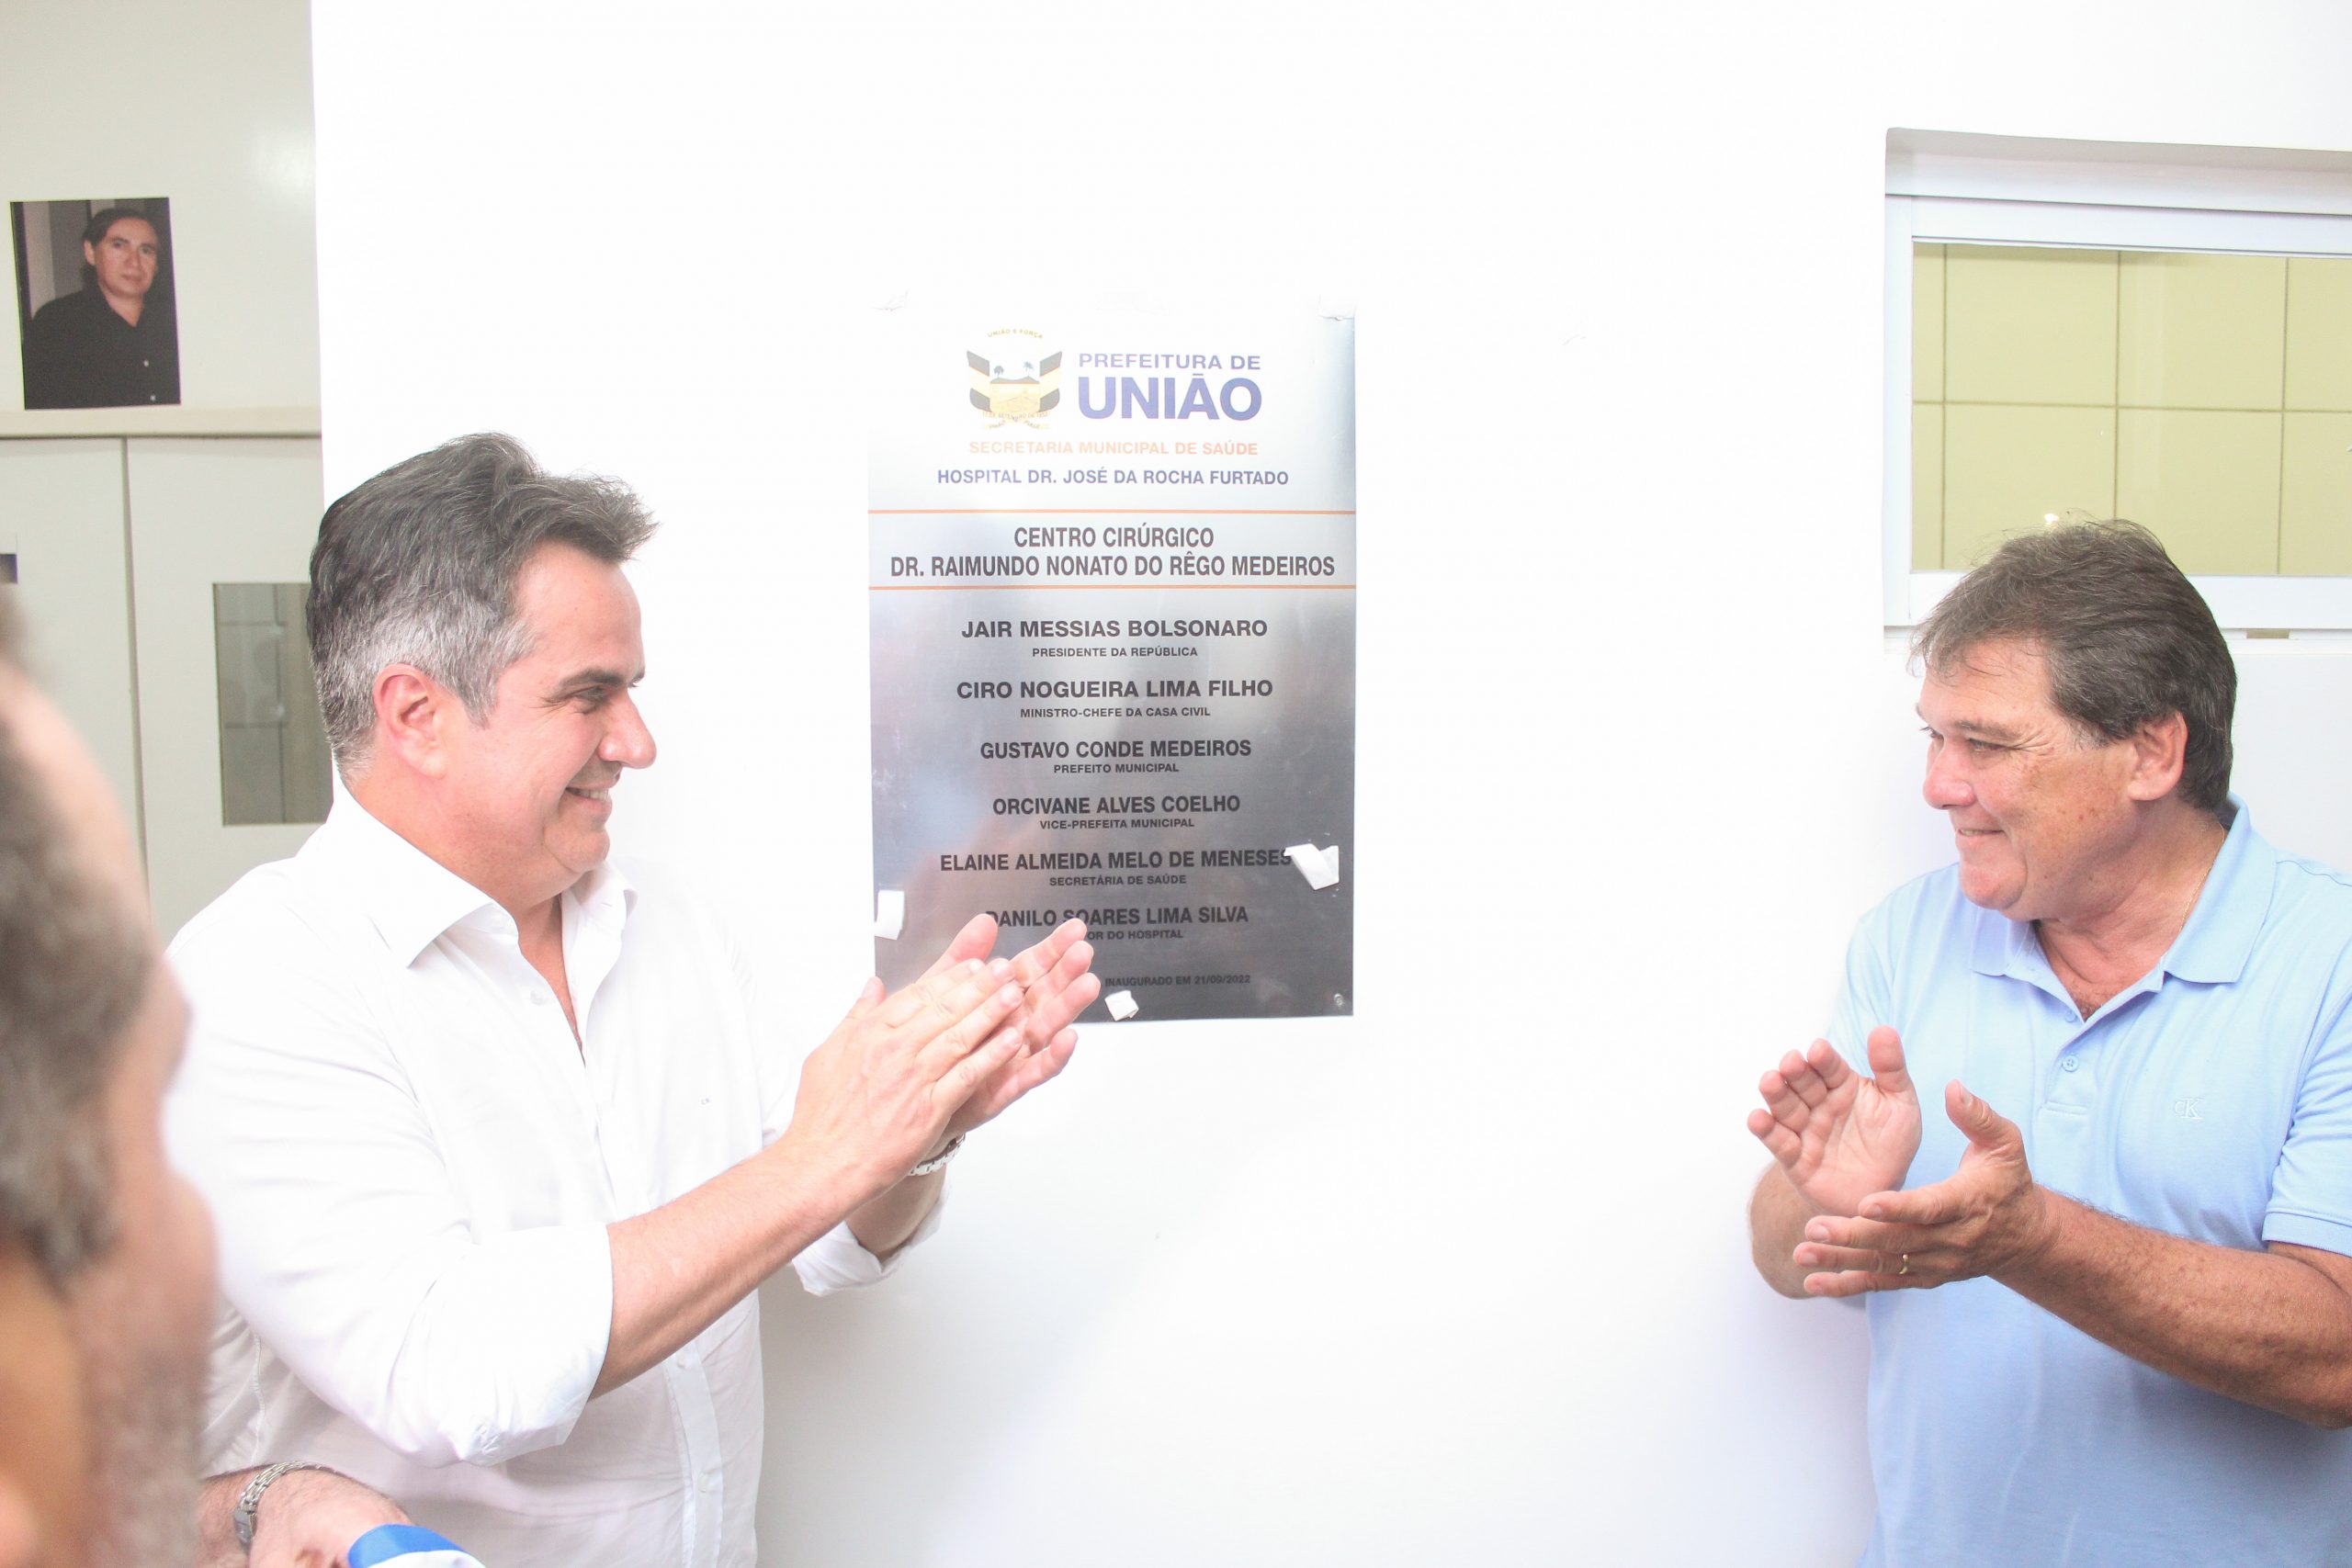 Prefeitura inaugura novo centro cirúrgico do Hospital José da Rocha Furtado em União